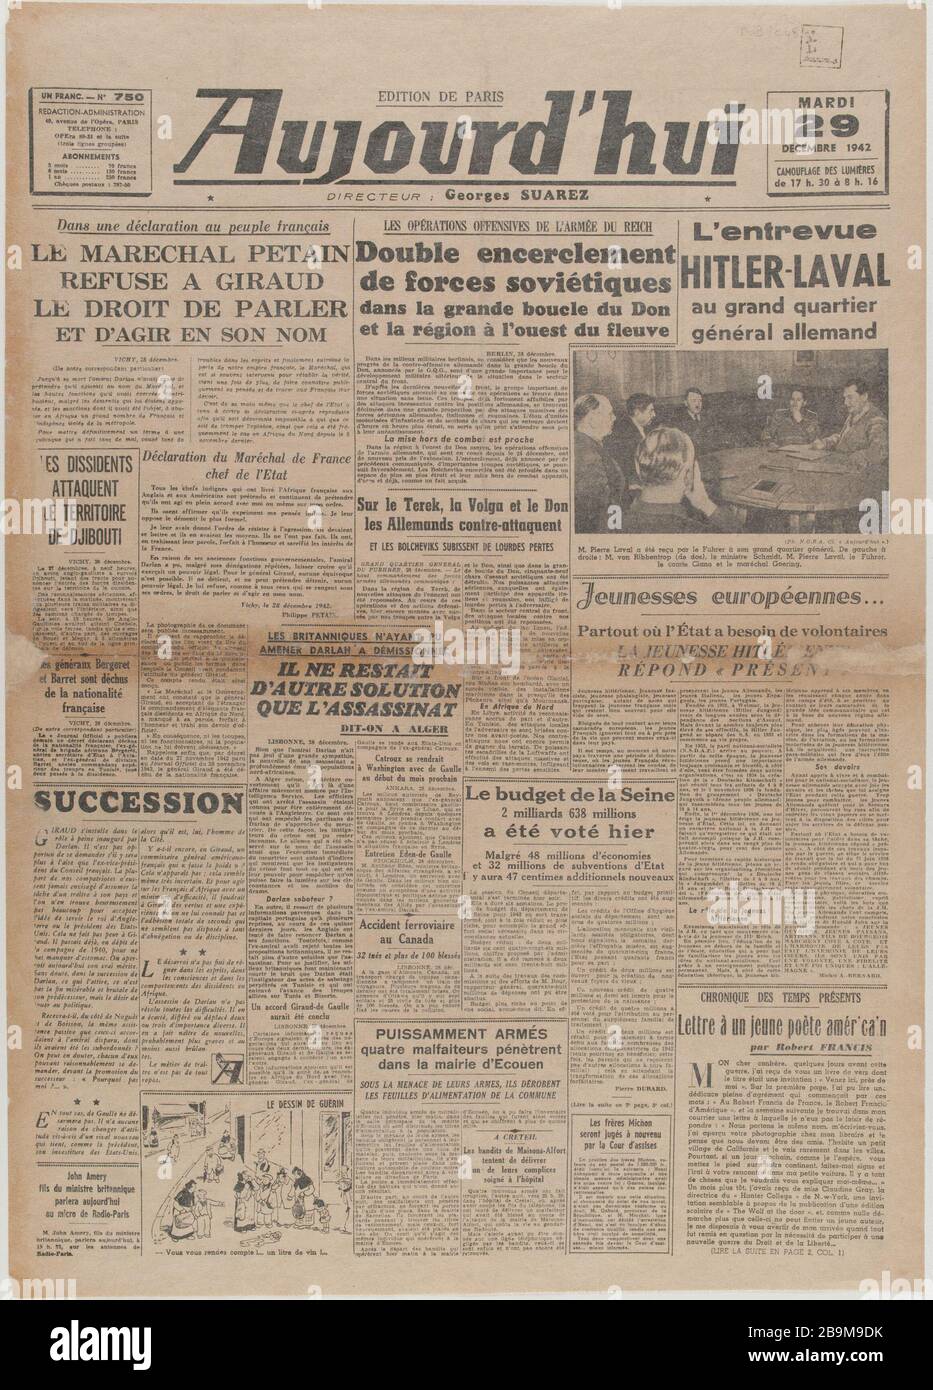 Newspaper 'Today' of December 29, 1942 Journal 'Aujourd'hui' du 29 décembre 1942. Papier imprimé, 1942. Musée du Général Leclerc de Hauteclocque et de la Libération de Paris, musée Jean Moulin. Stock Photo